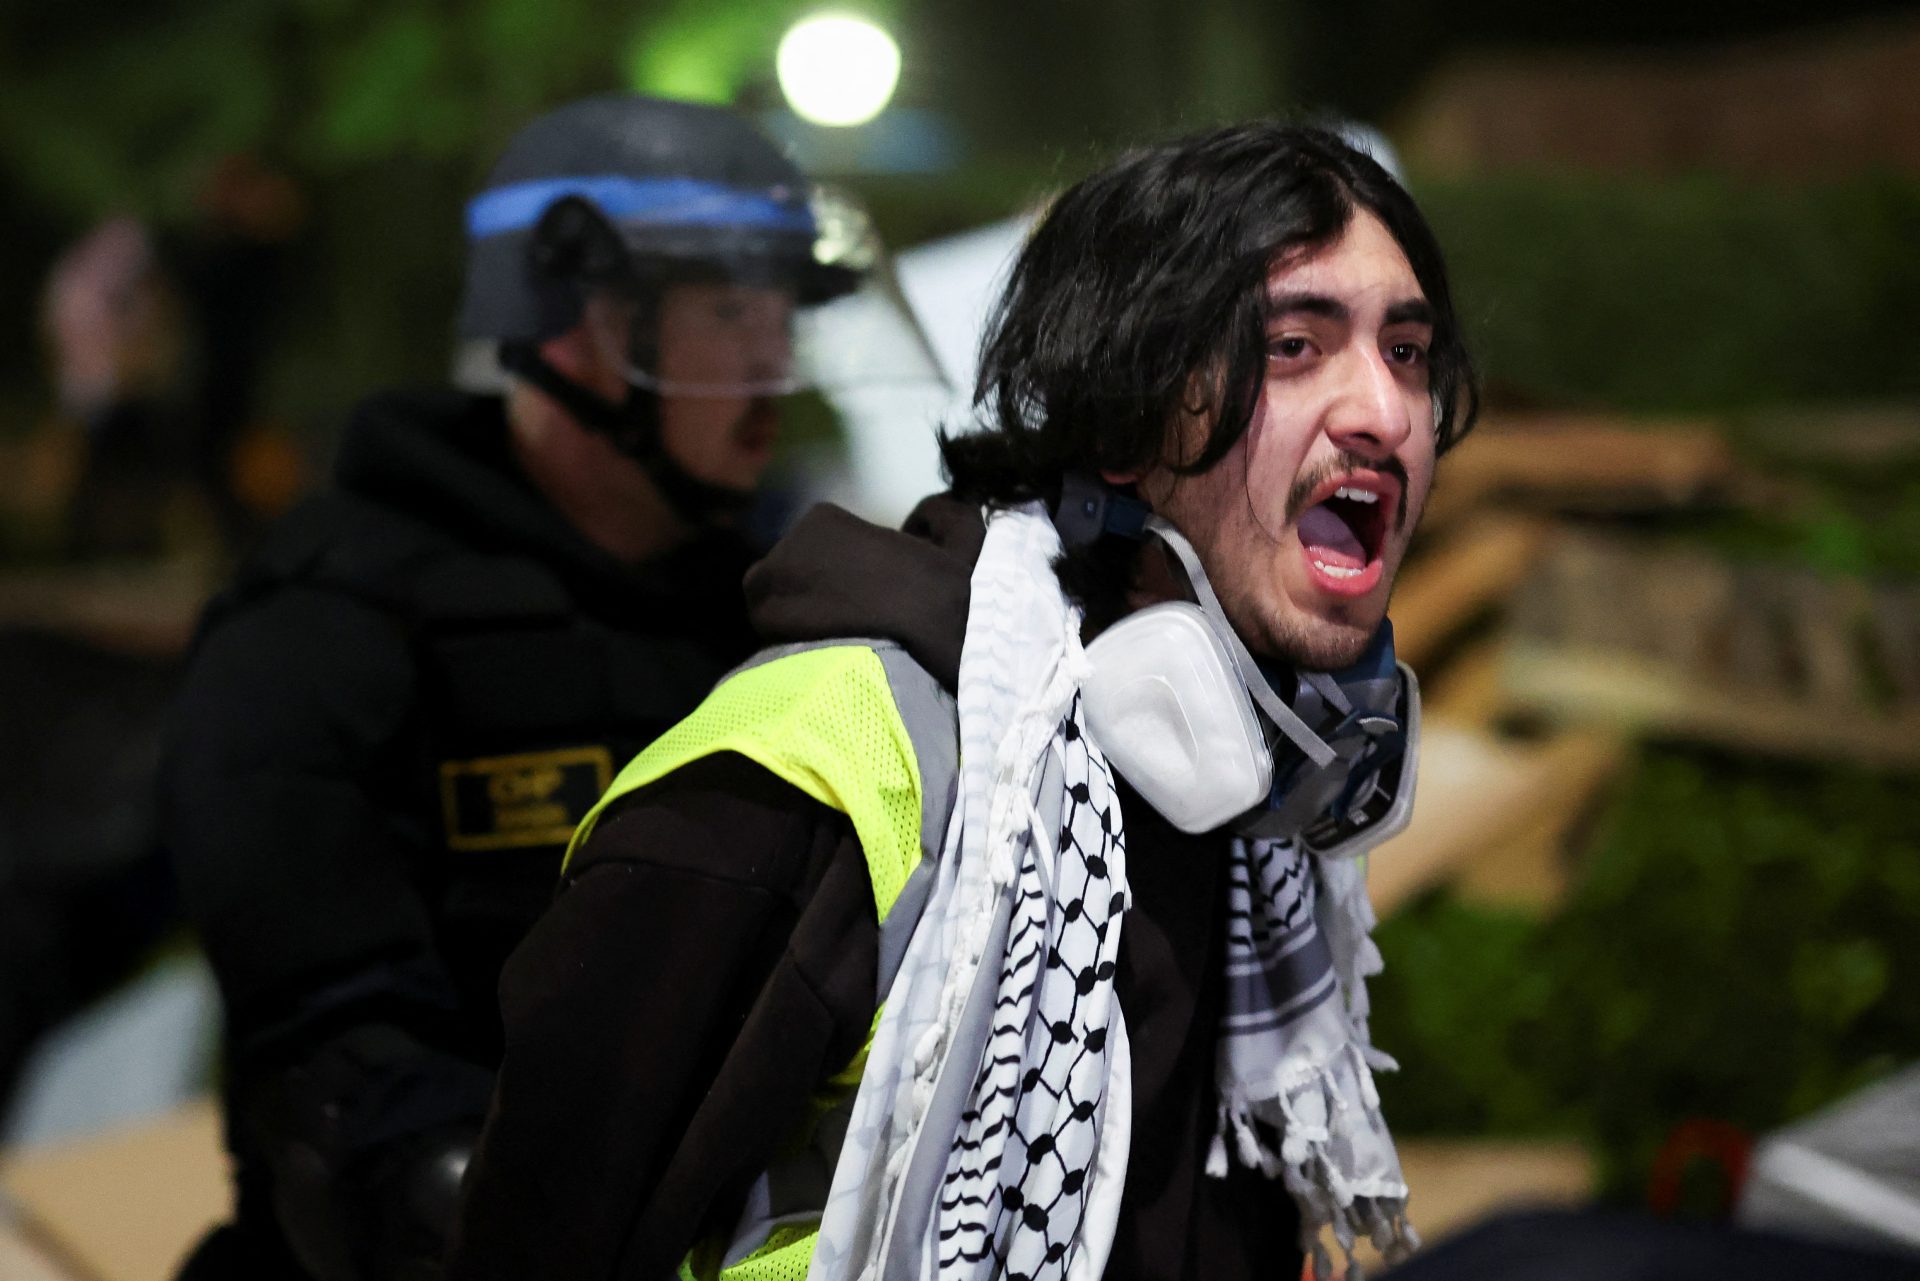 Déploiement choc à UCLA contre une manif pro-Palestine pacifique